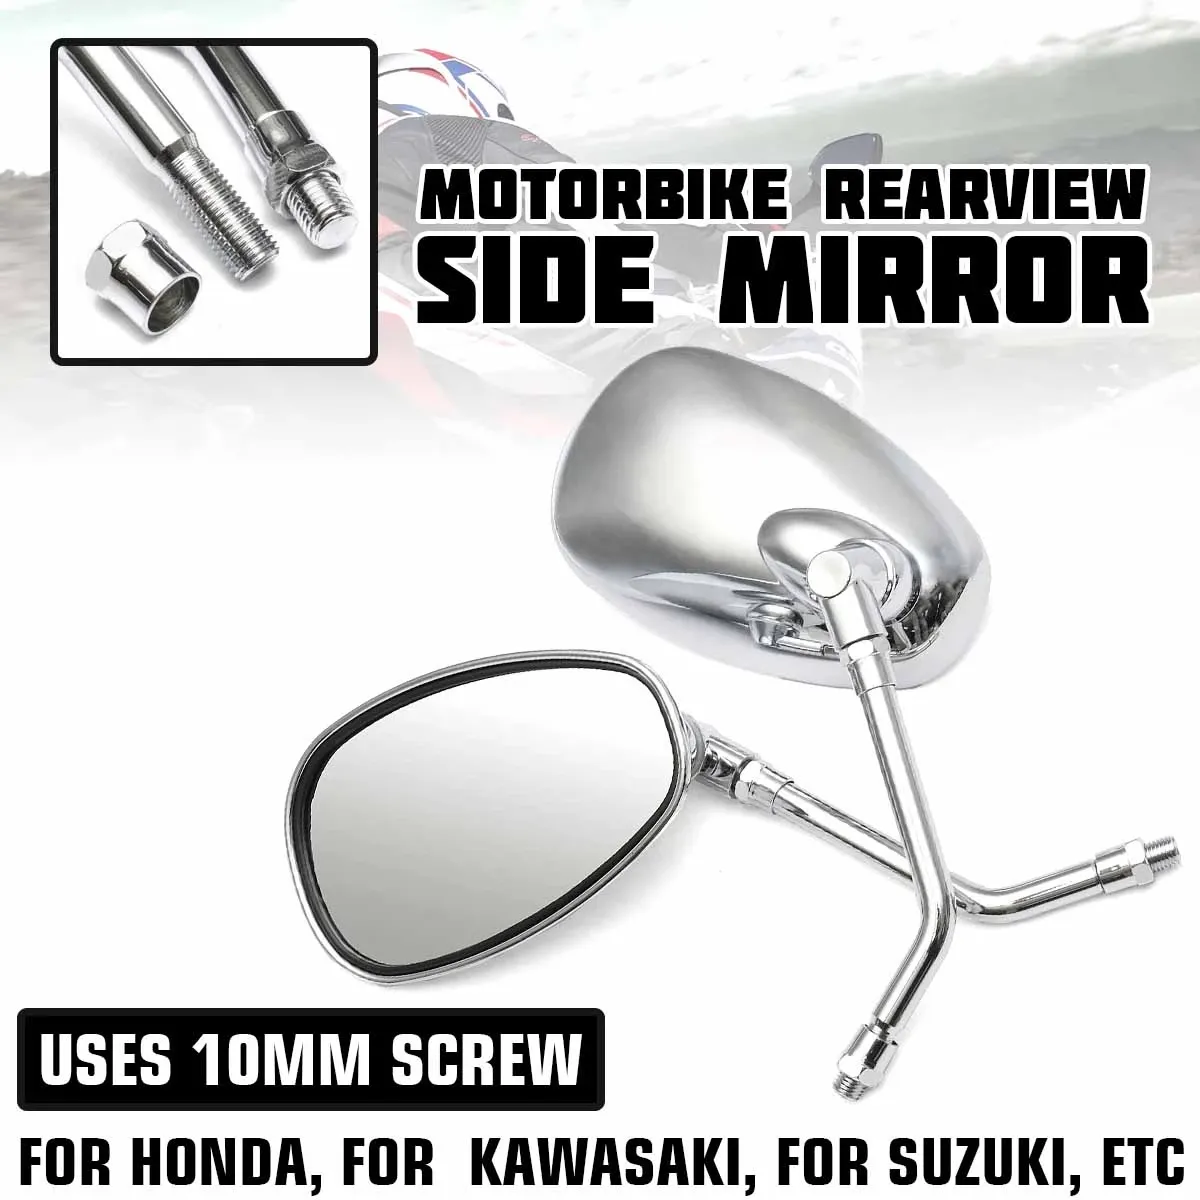 Coppia 10mm Universal Motorcycle Rear View Specchietto Rearview Laterale Ala Specchi per Honda / Kawasaki / Suzuki